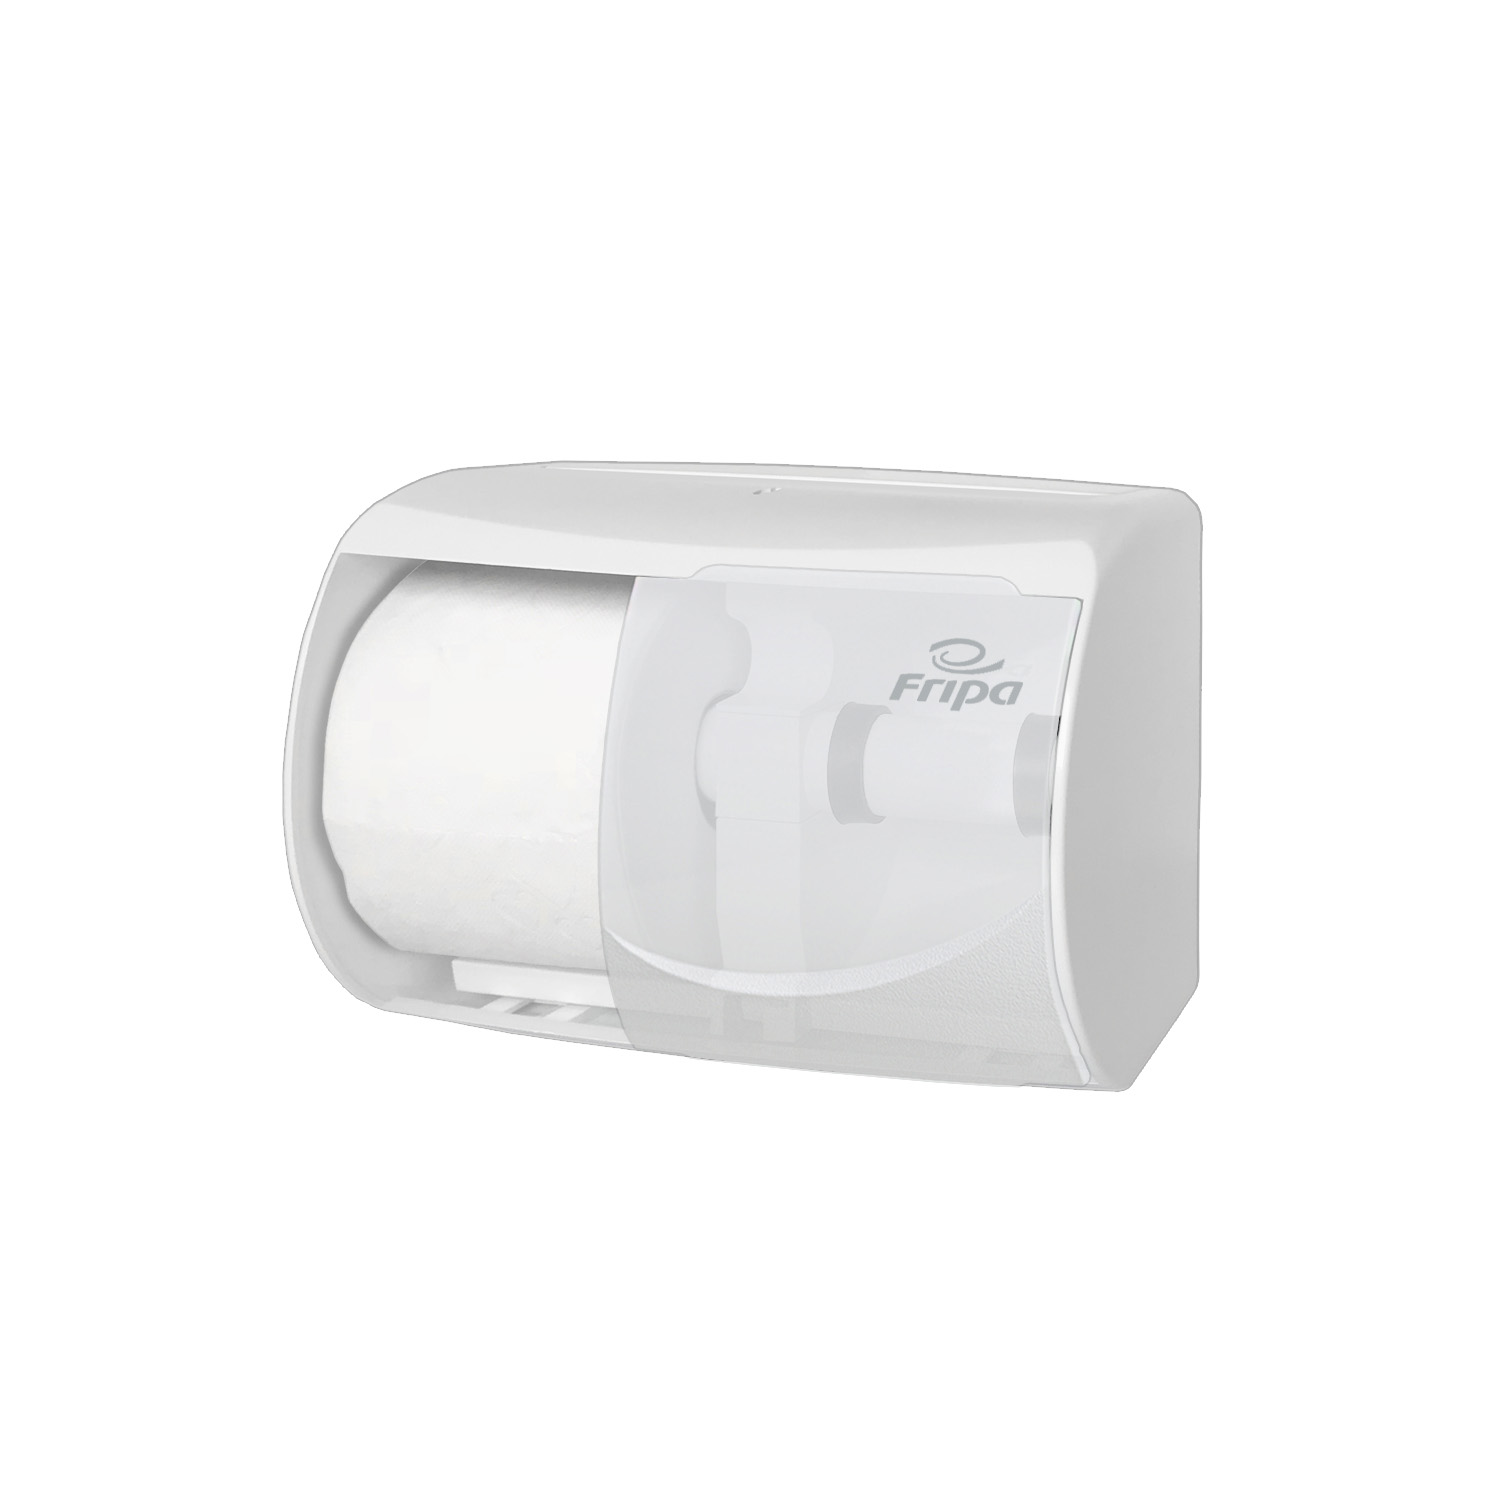 Fripa - Toilettenpapierspender Kunststoff weiß, für 2 Rollen